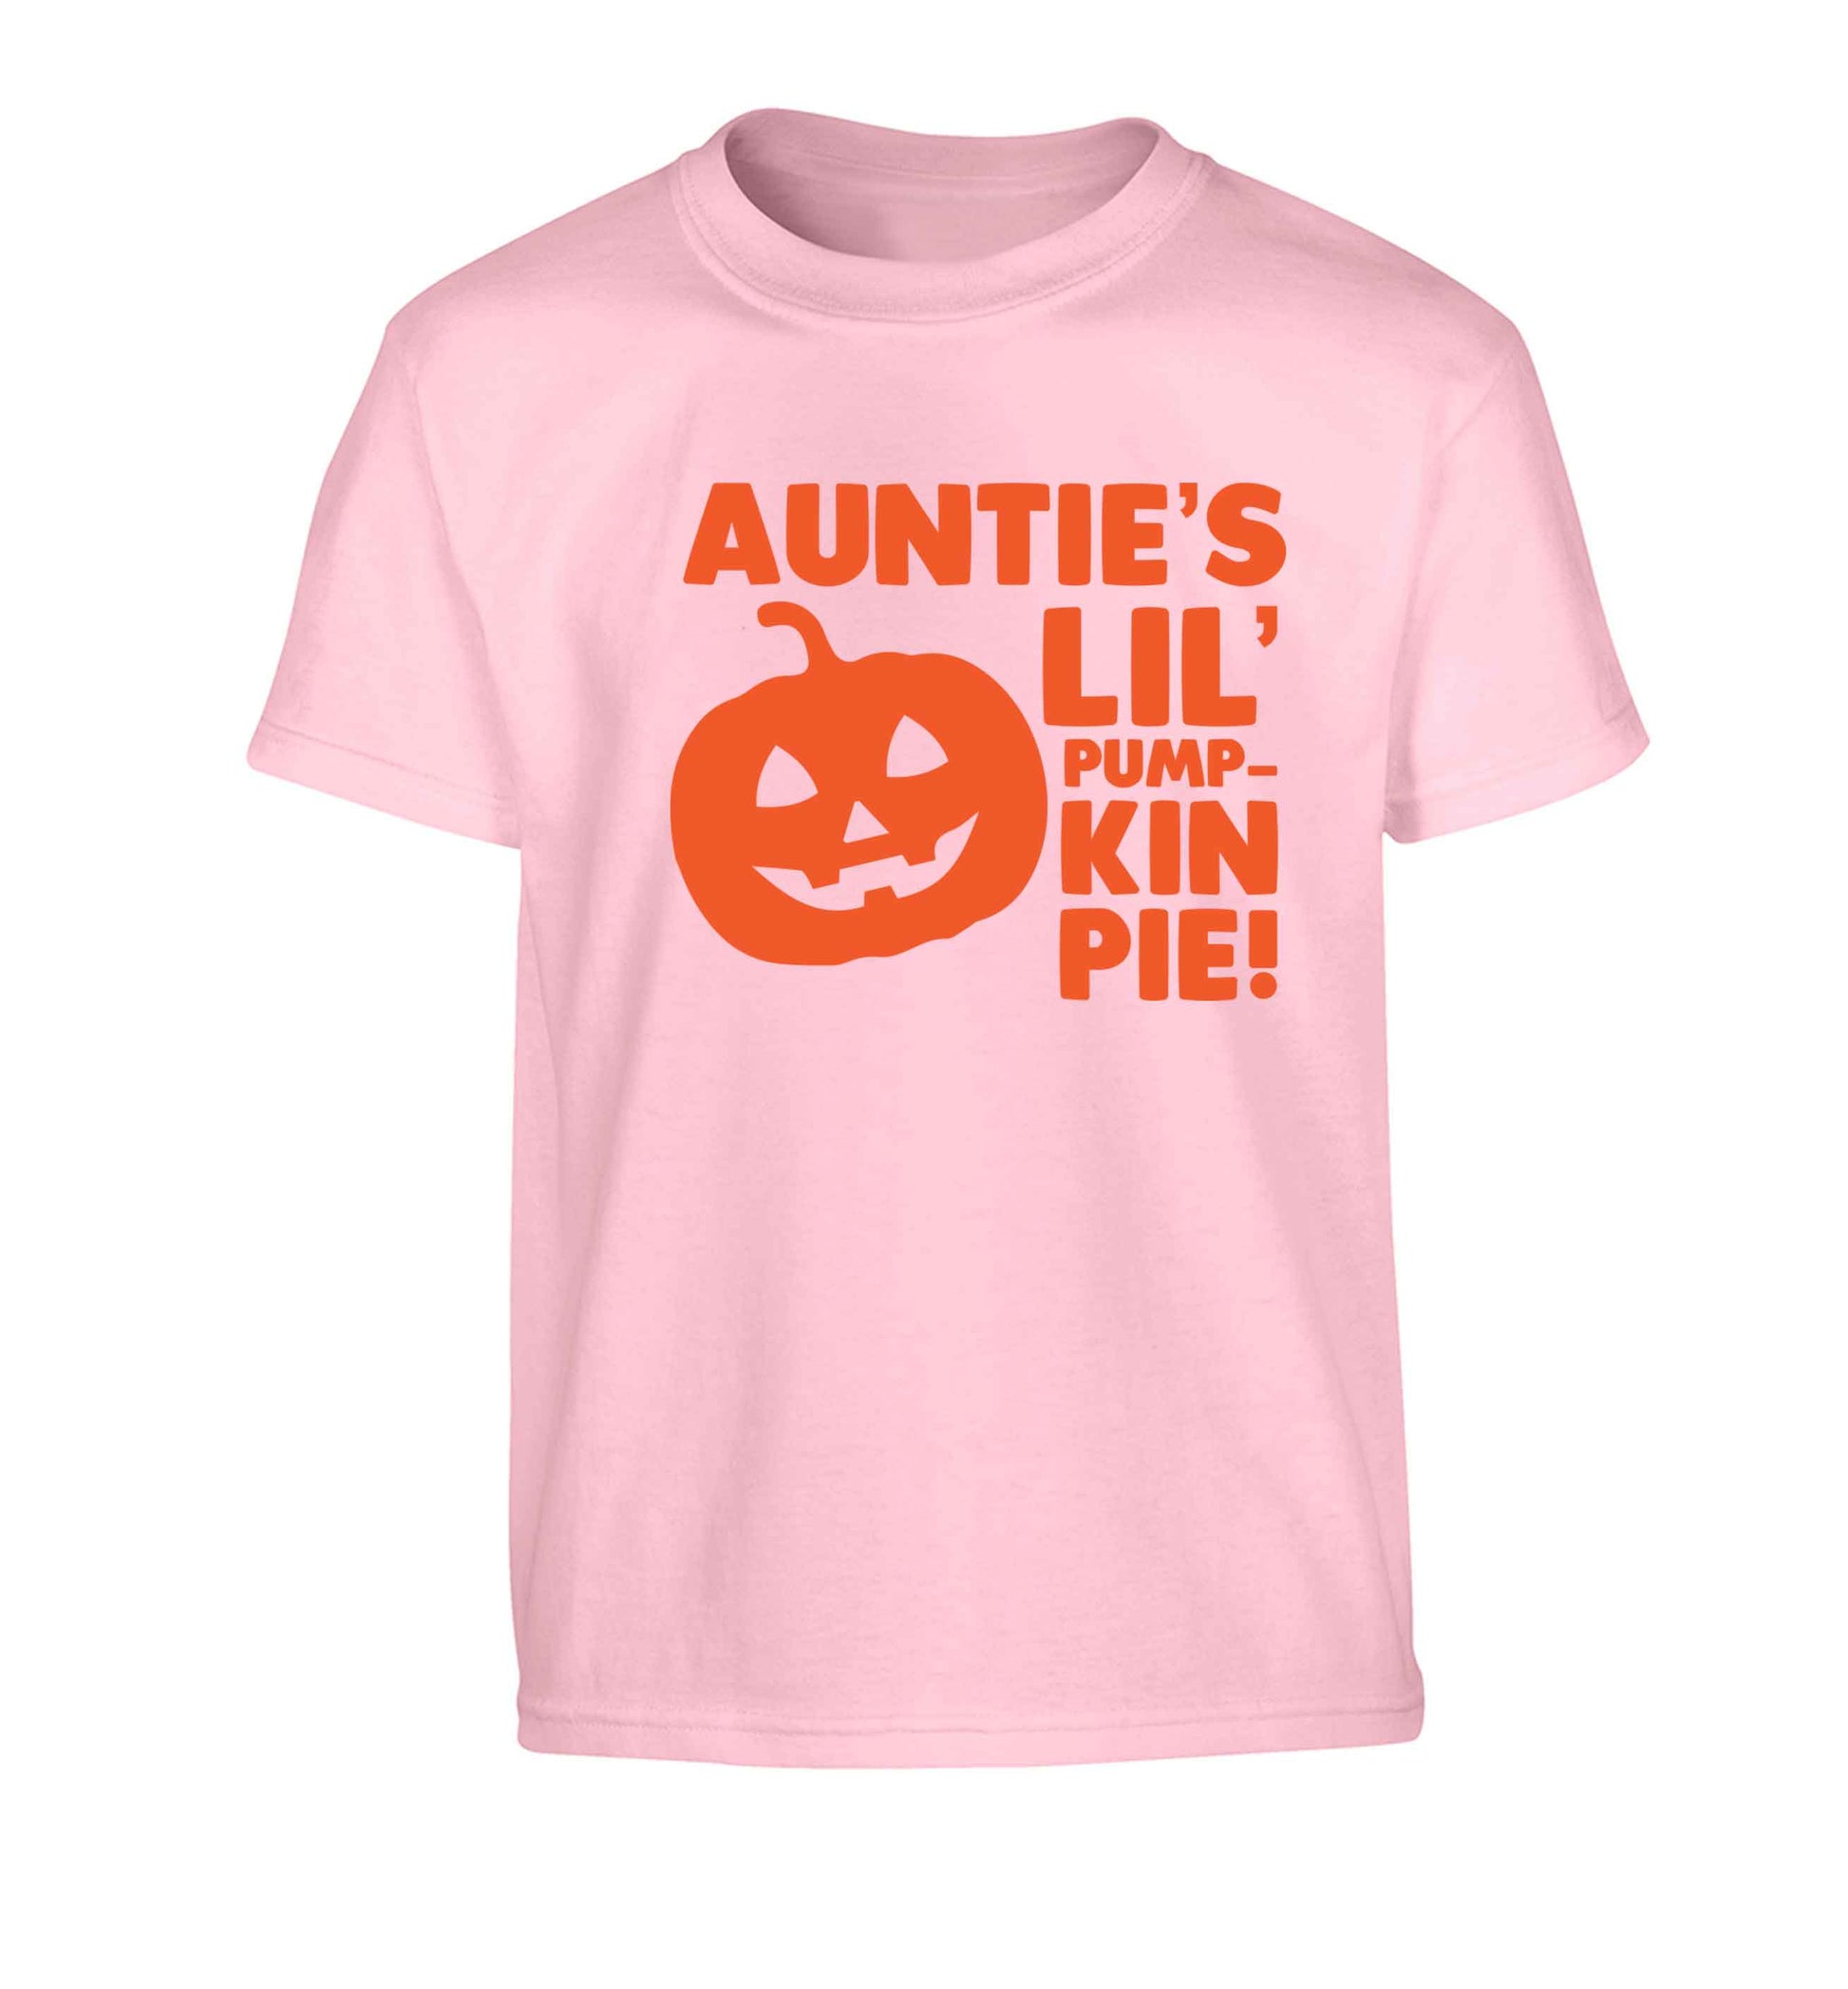 Auntie's lil' pumpkin pie Children's light pink Tshirt 12-13 Years